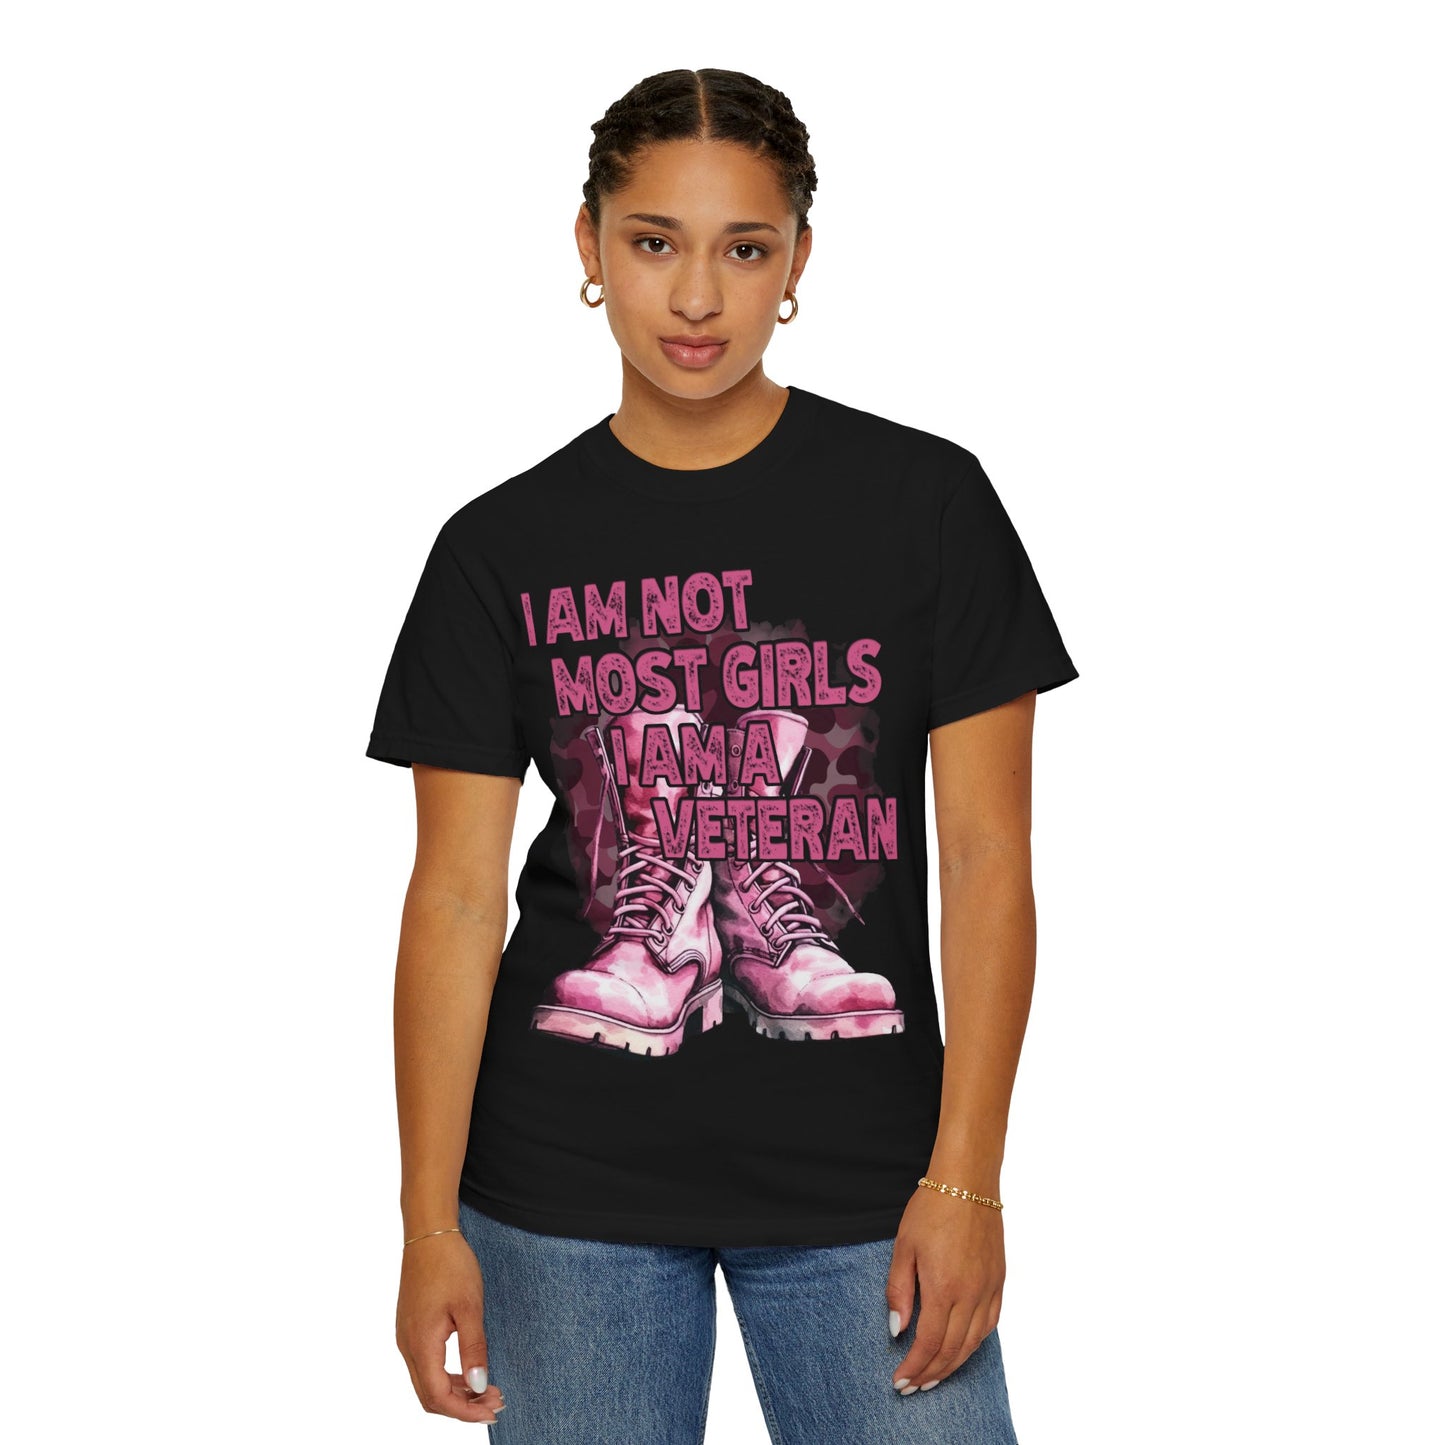 Unisex Garment-Dyed T-shirt - Female Veterans